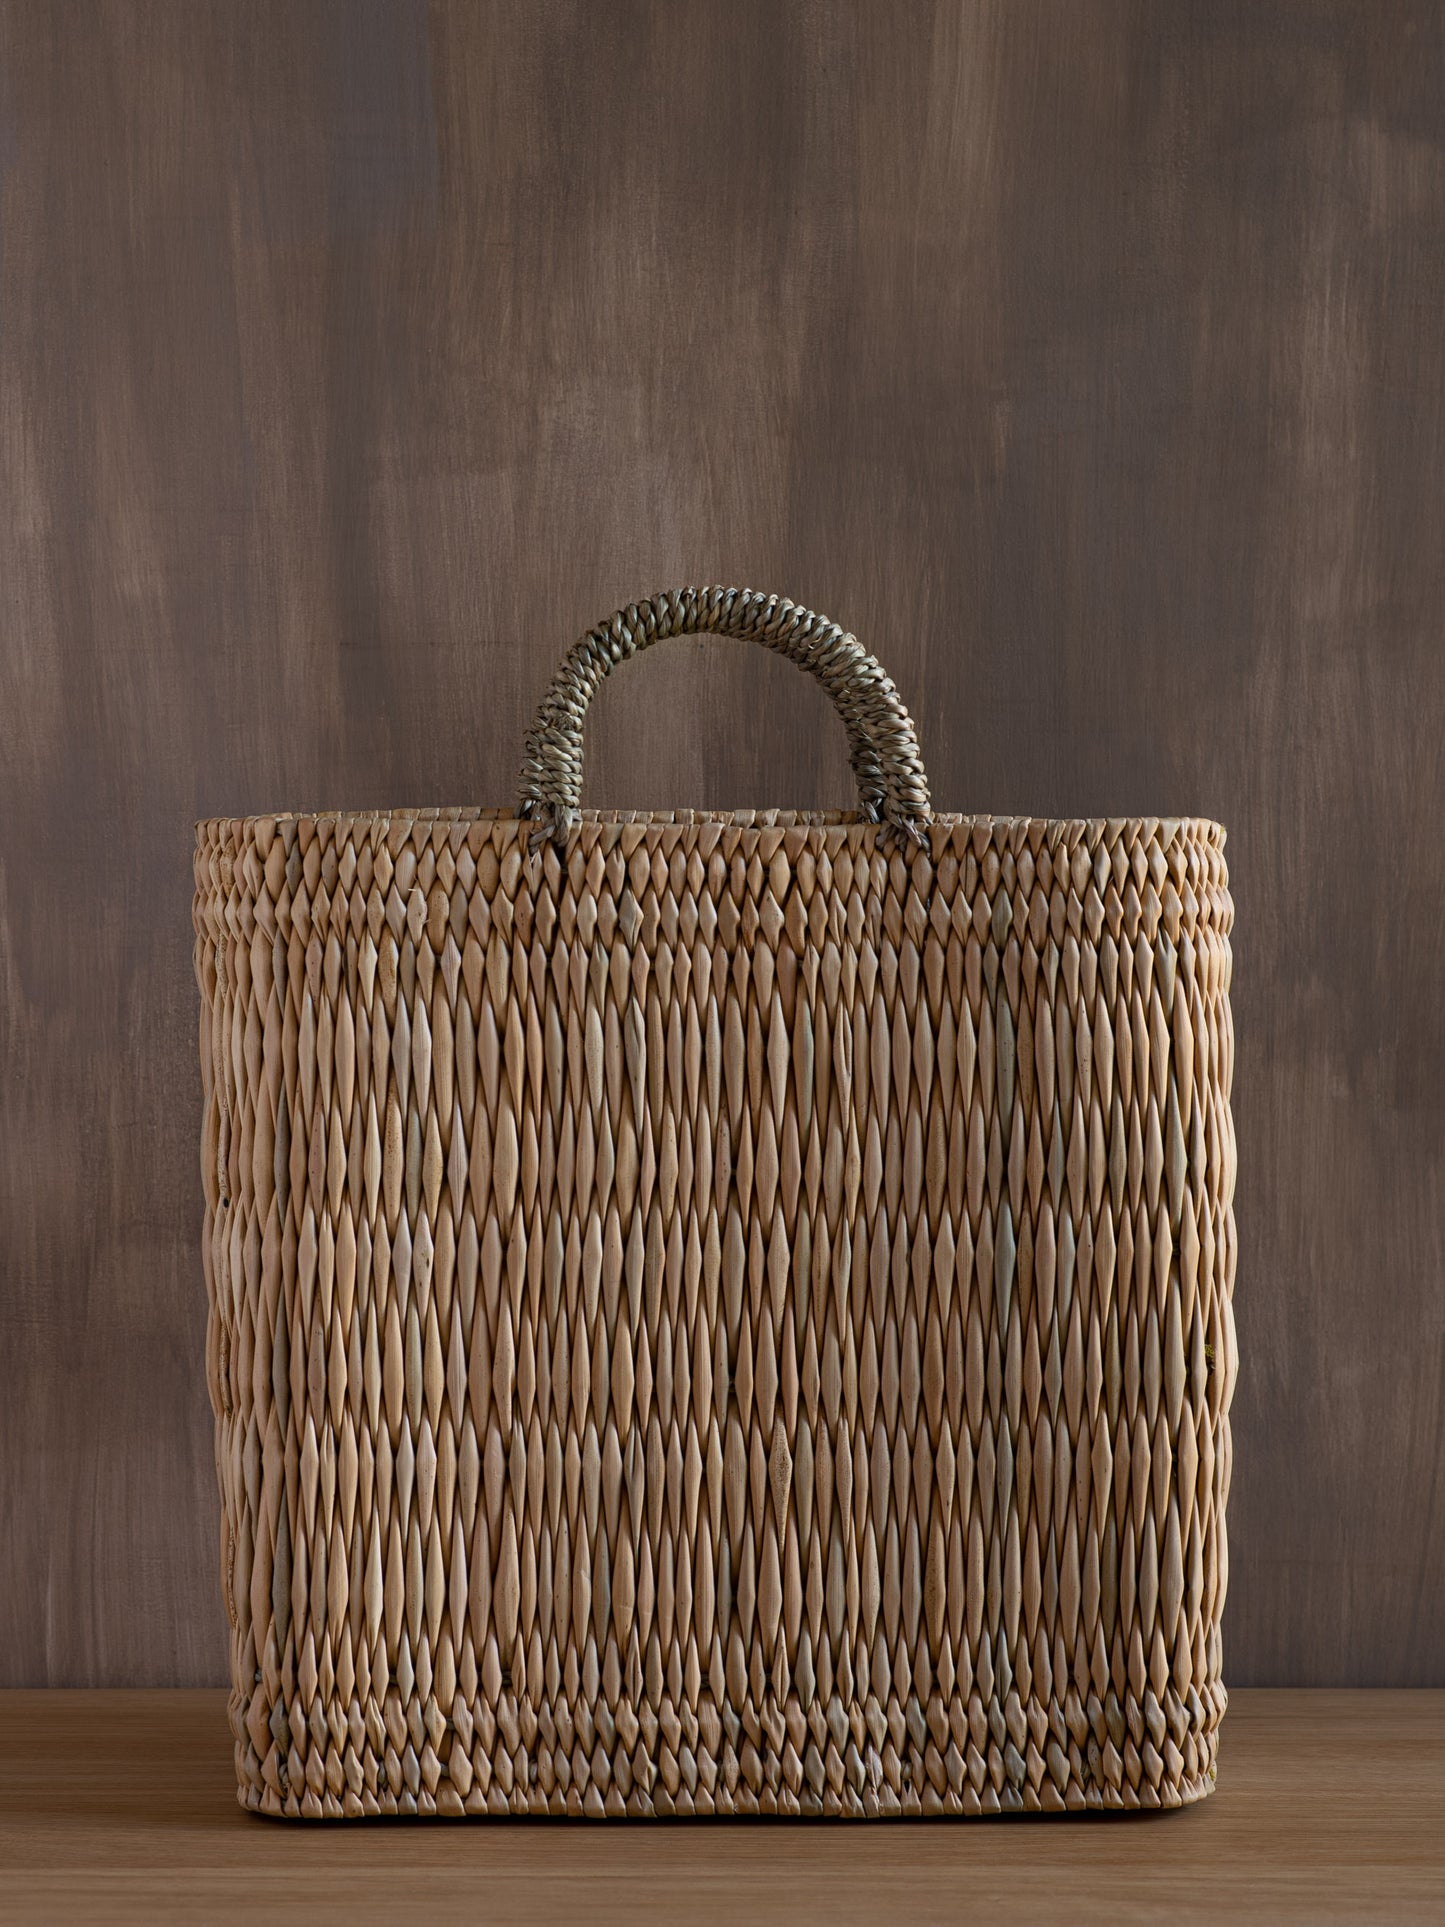 Handwoven Straw Wine Basket